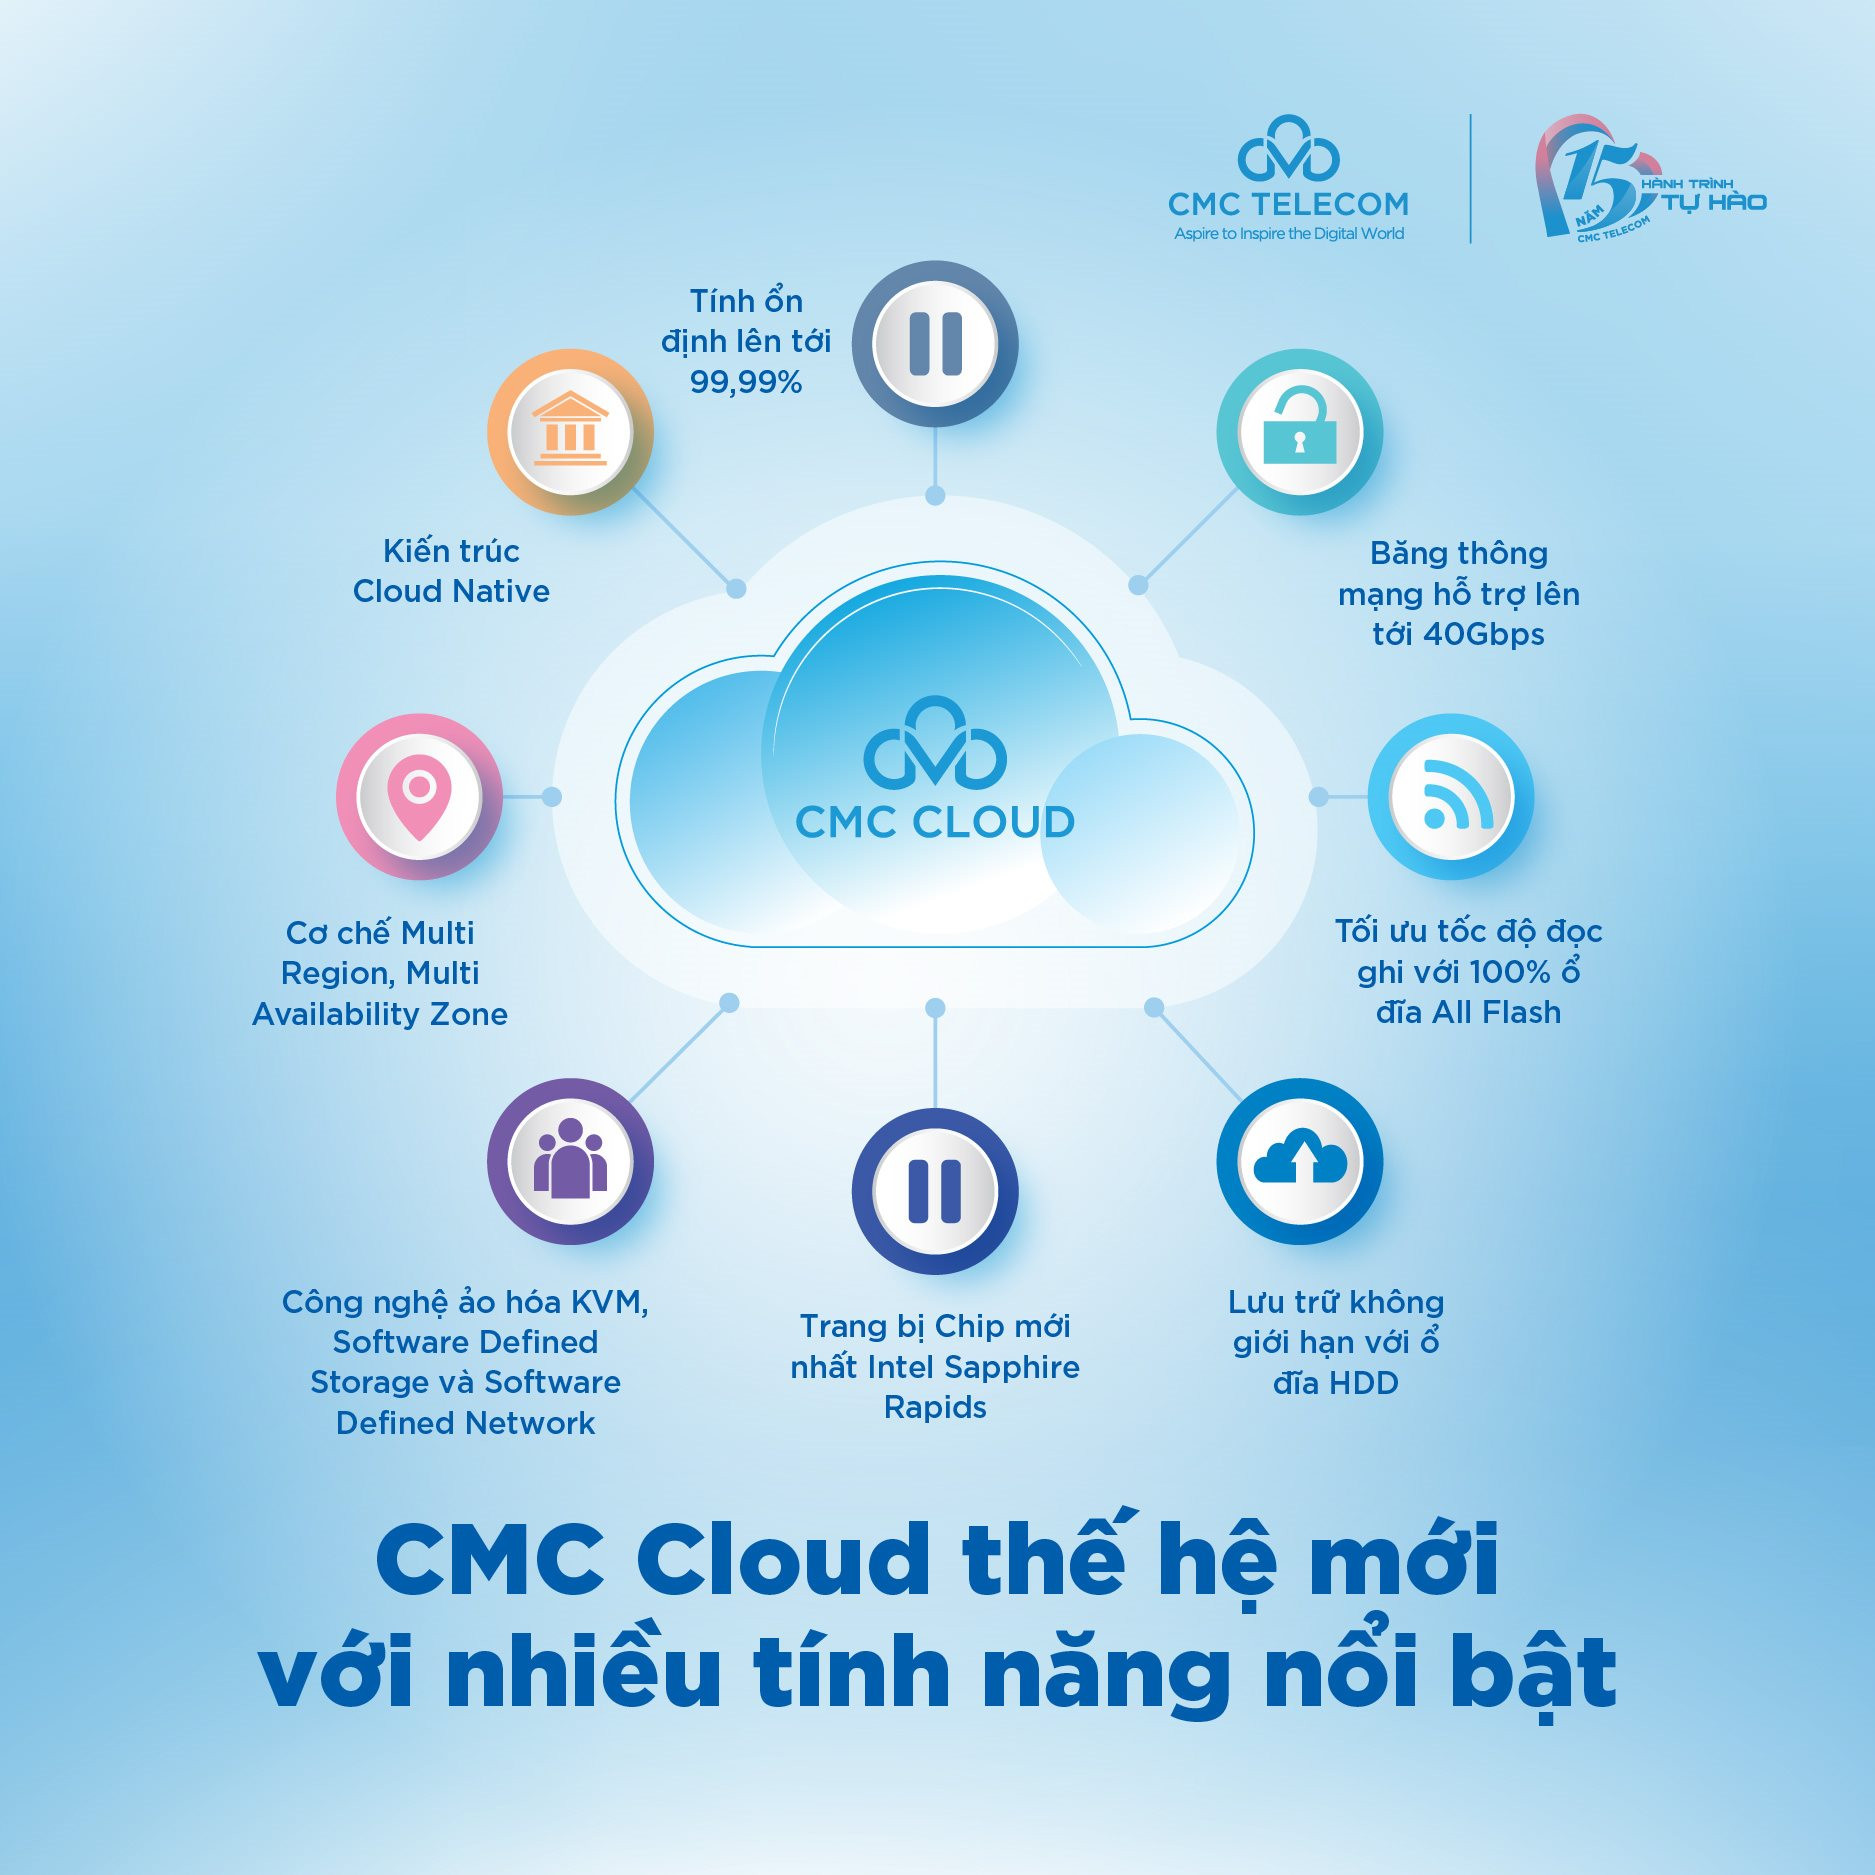 cmc-cloud-3.jpg